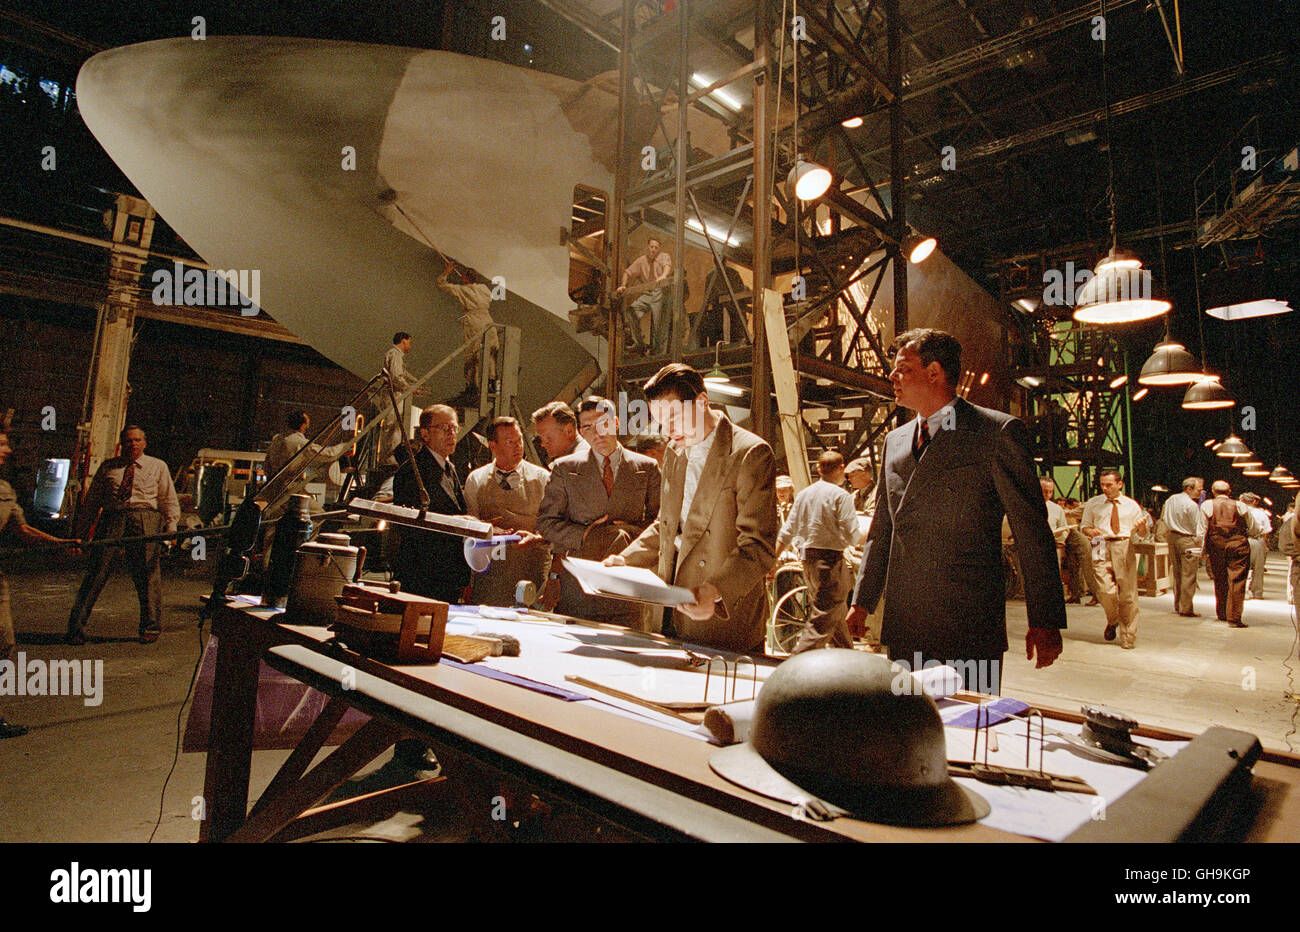 AVIATOR USA 2004 Martin Scorsese Howard Hughes (Leonardo Di Caprio) beim Bau eines Flugzeugs. Film, Fernsehen, Kino, Abenteuerfilm, dramma Regie: Martin Scorsese Foto Stock